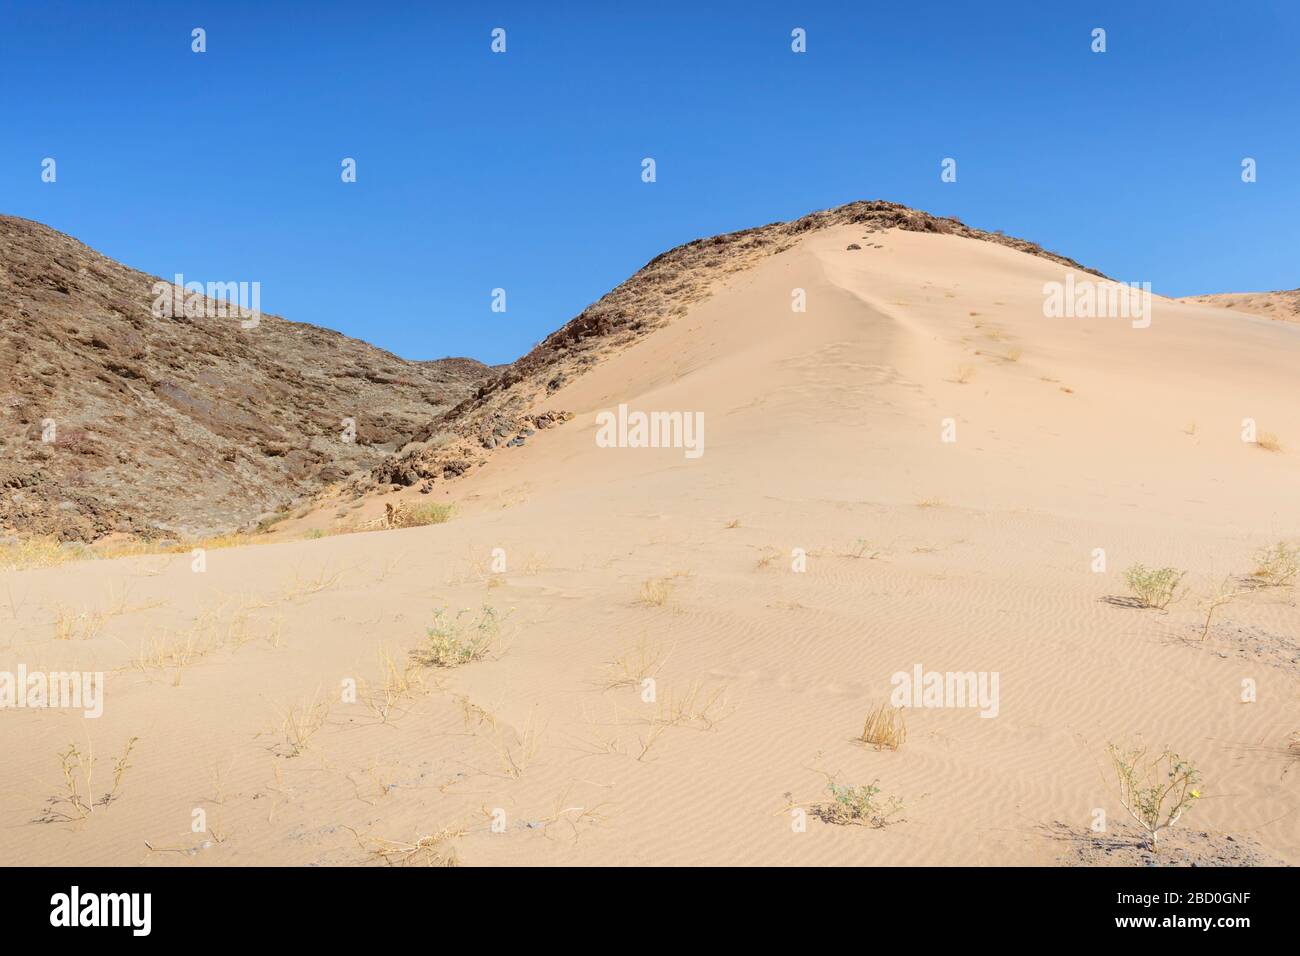 Damaraland desert landscape, Namibia. Stock Photo